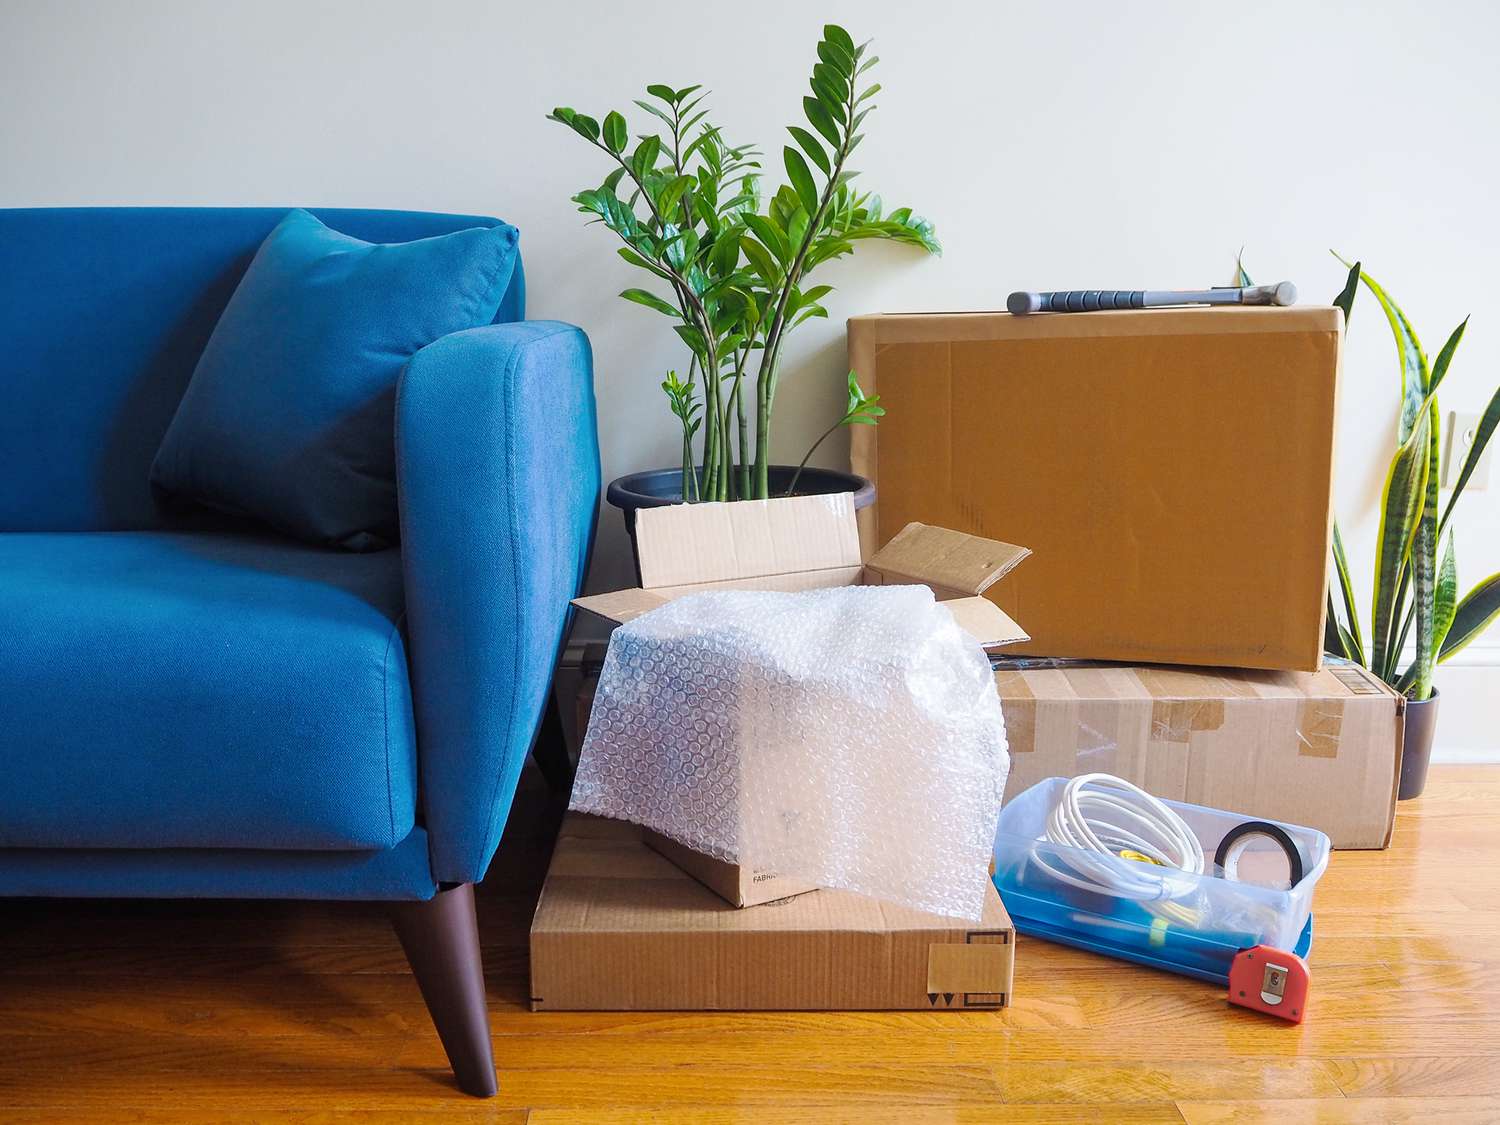 Canapé bleu à côté de cartons de déménagement, de plantes d'intérieur et de matériel 